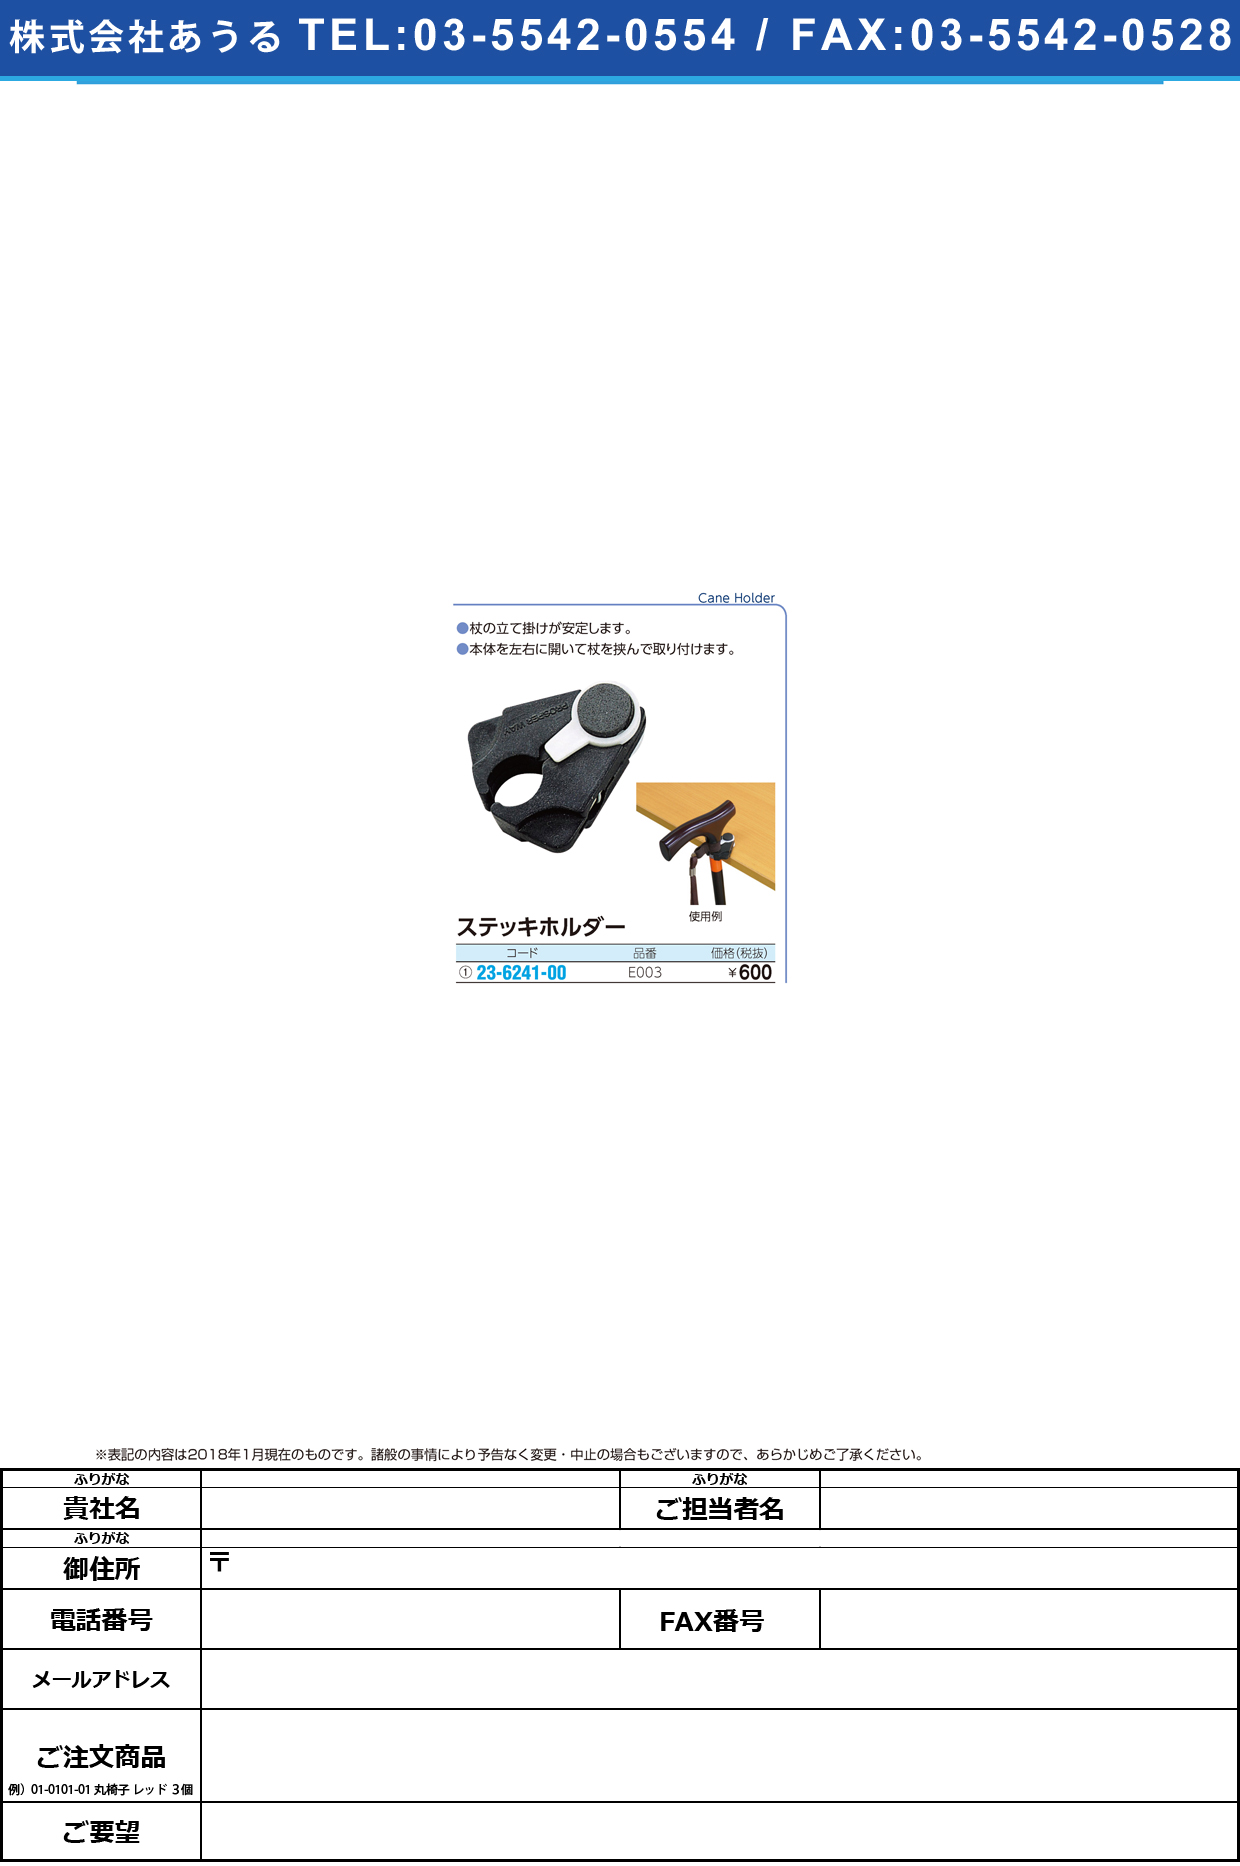 (23-6241-00)ステッキホルダー E003 ｽﾃｯｷﾎﾙﾀﾞｰ【1個単位】【2018年カタログ商品】